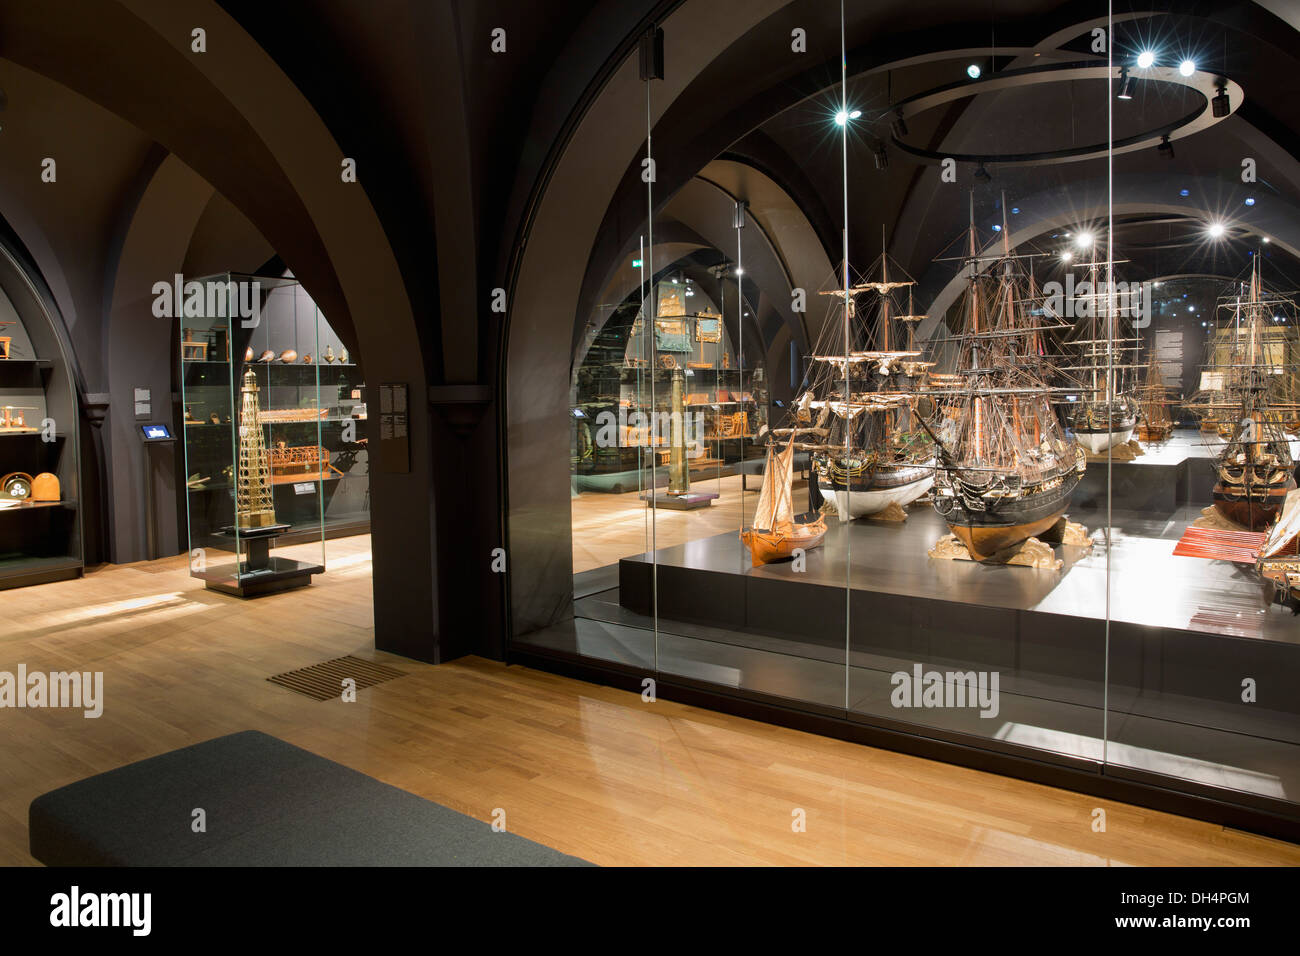 Países Bajos, Amsterdam, Rijksmuseum. Modelos de barco Foto de stock